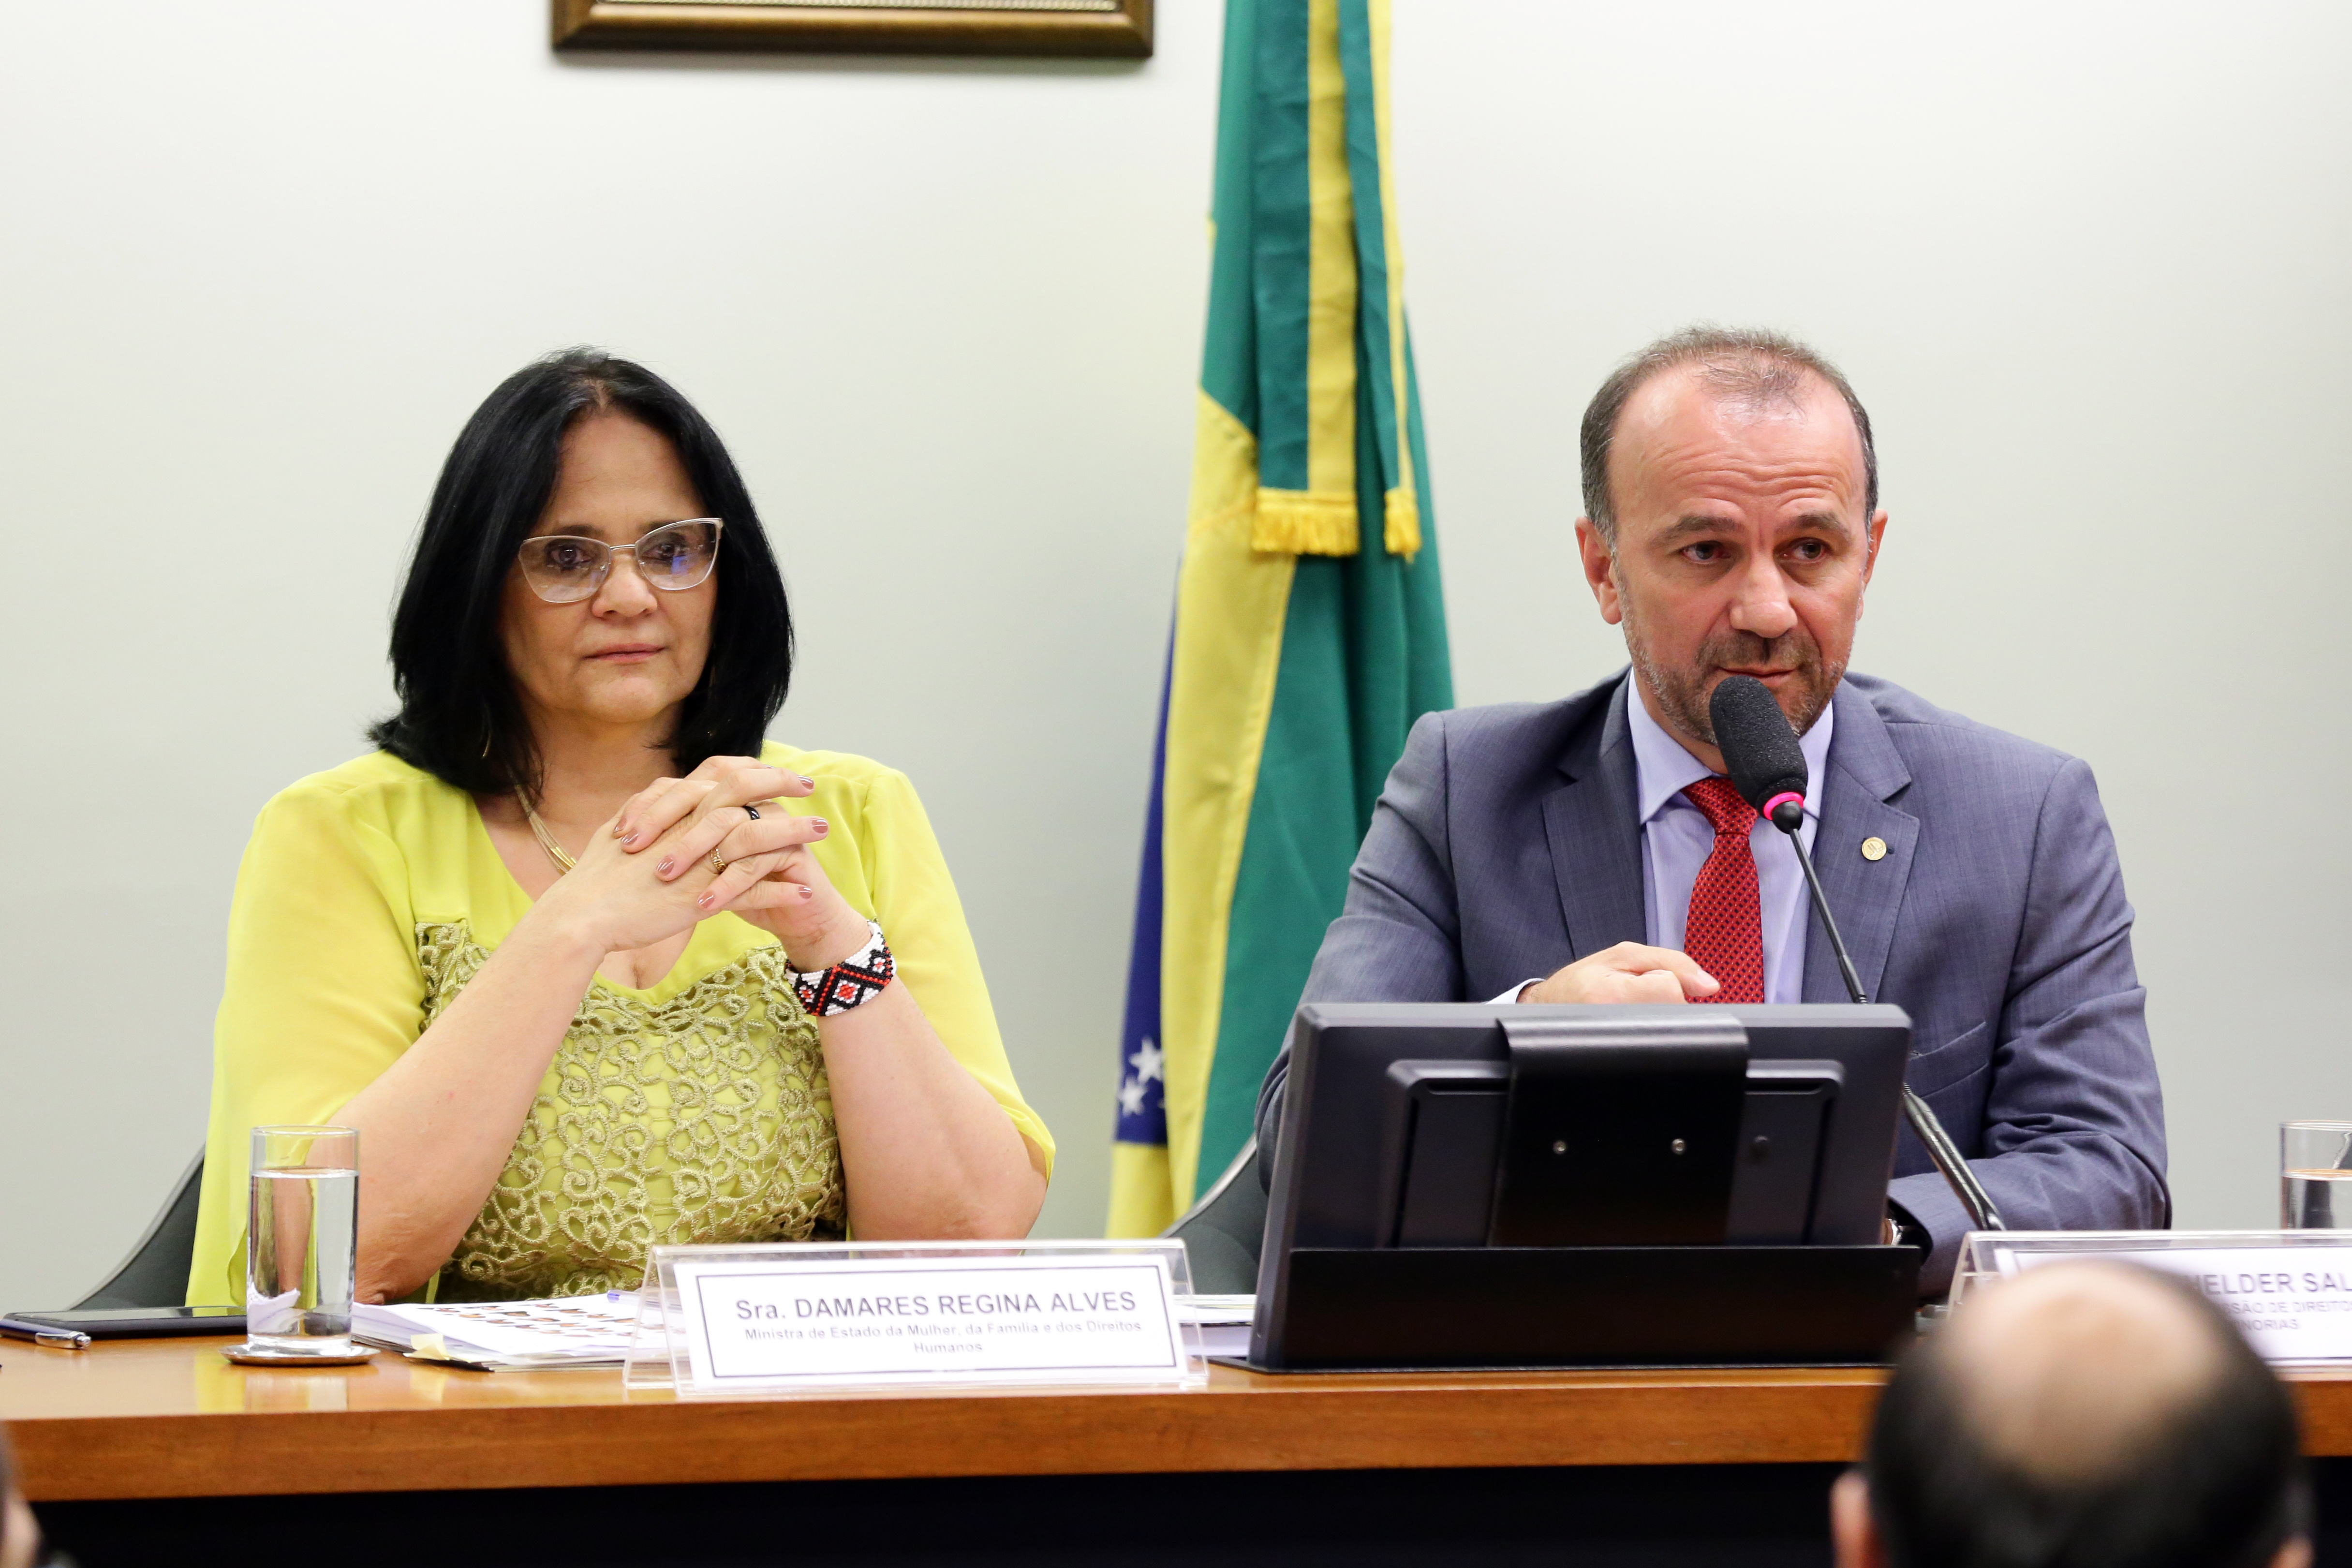 “Isso é inadmissível”: afirma o presidente da CDHM, Helder Salomão (PT/ES) sobre proposta de Damares Alves para rever Plano Nacional de Direitos Humanos